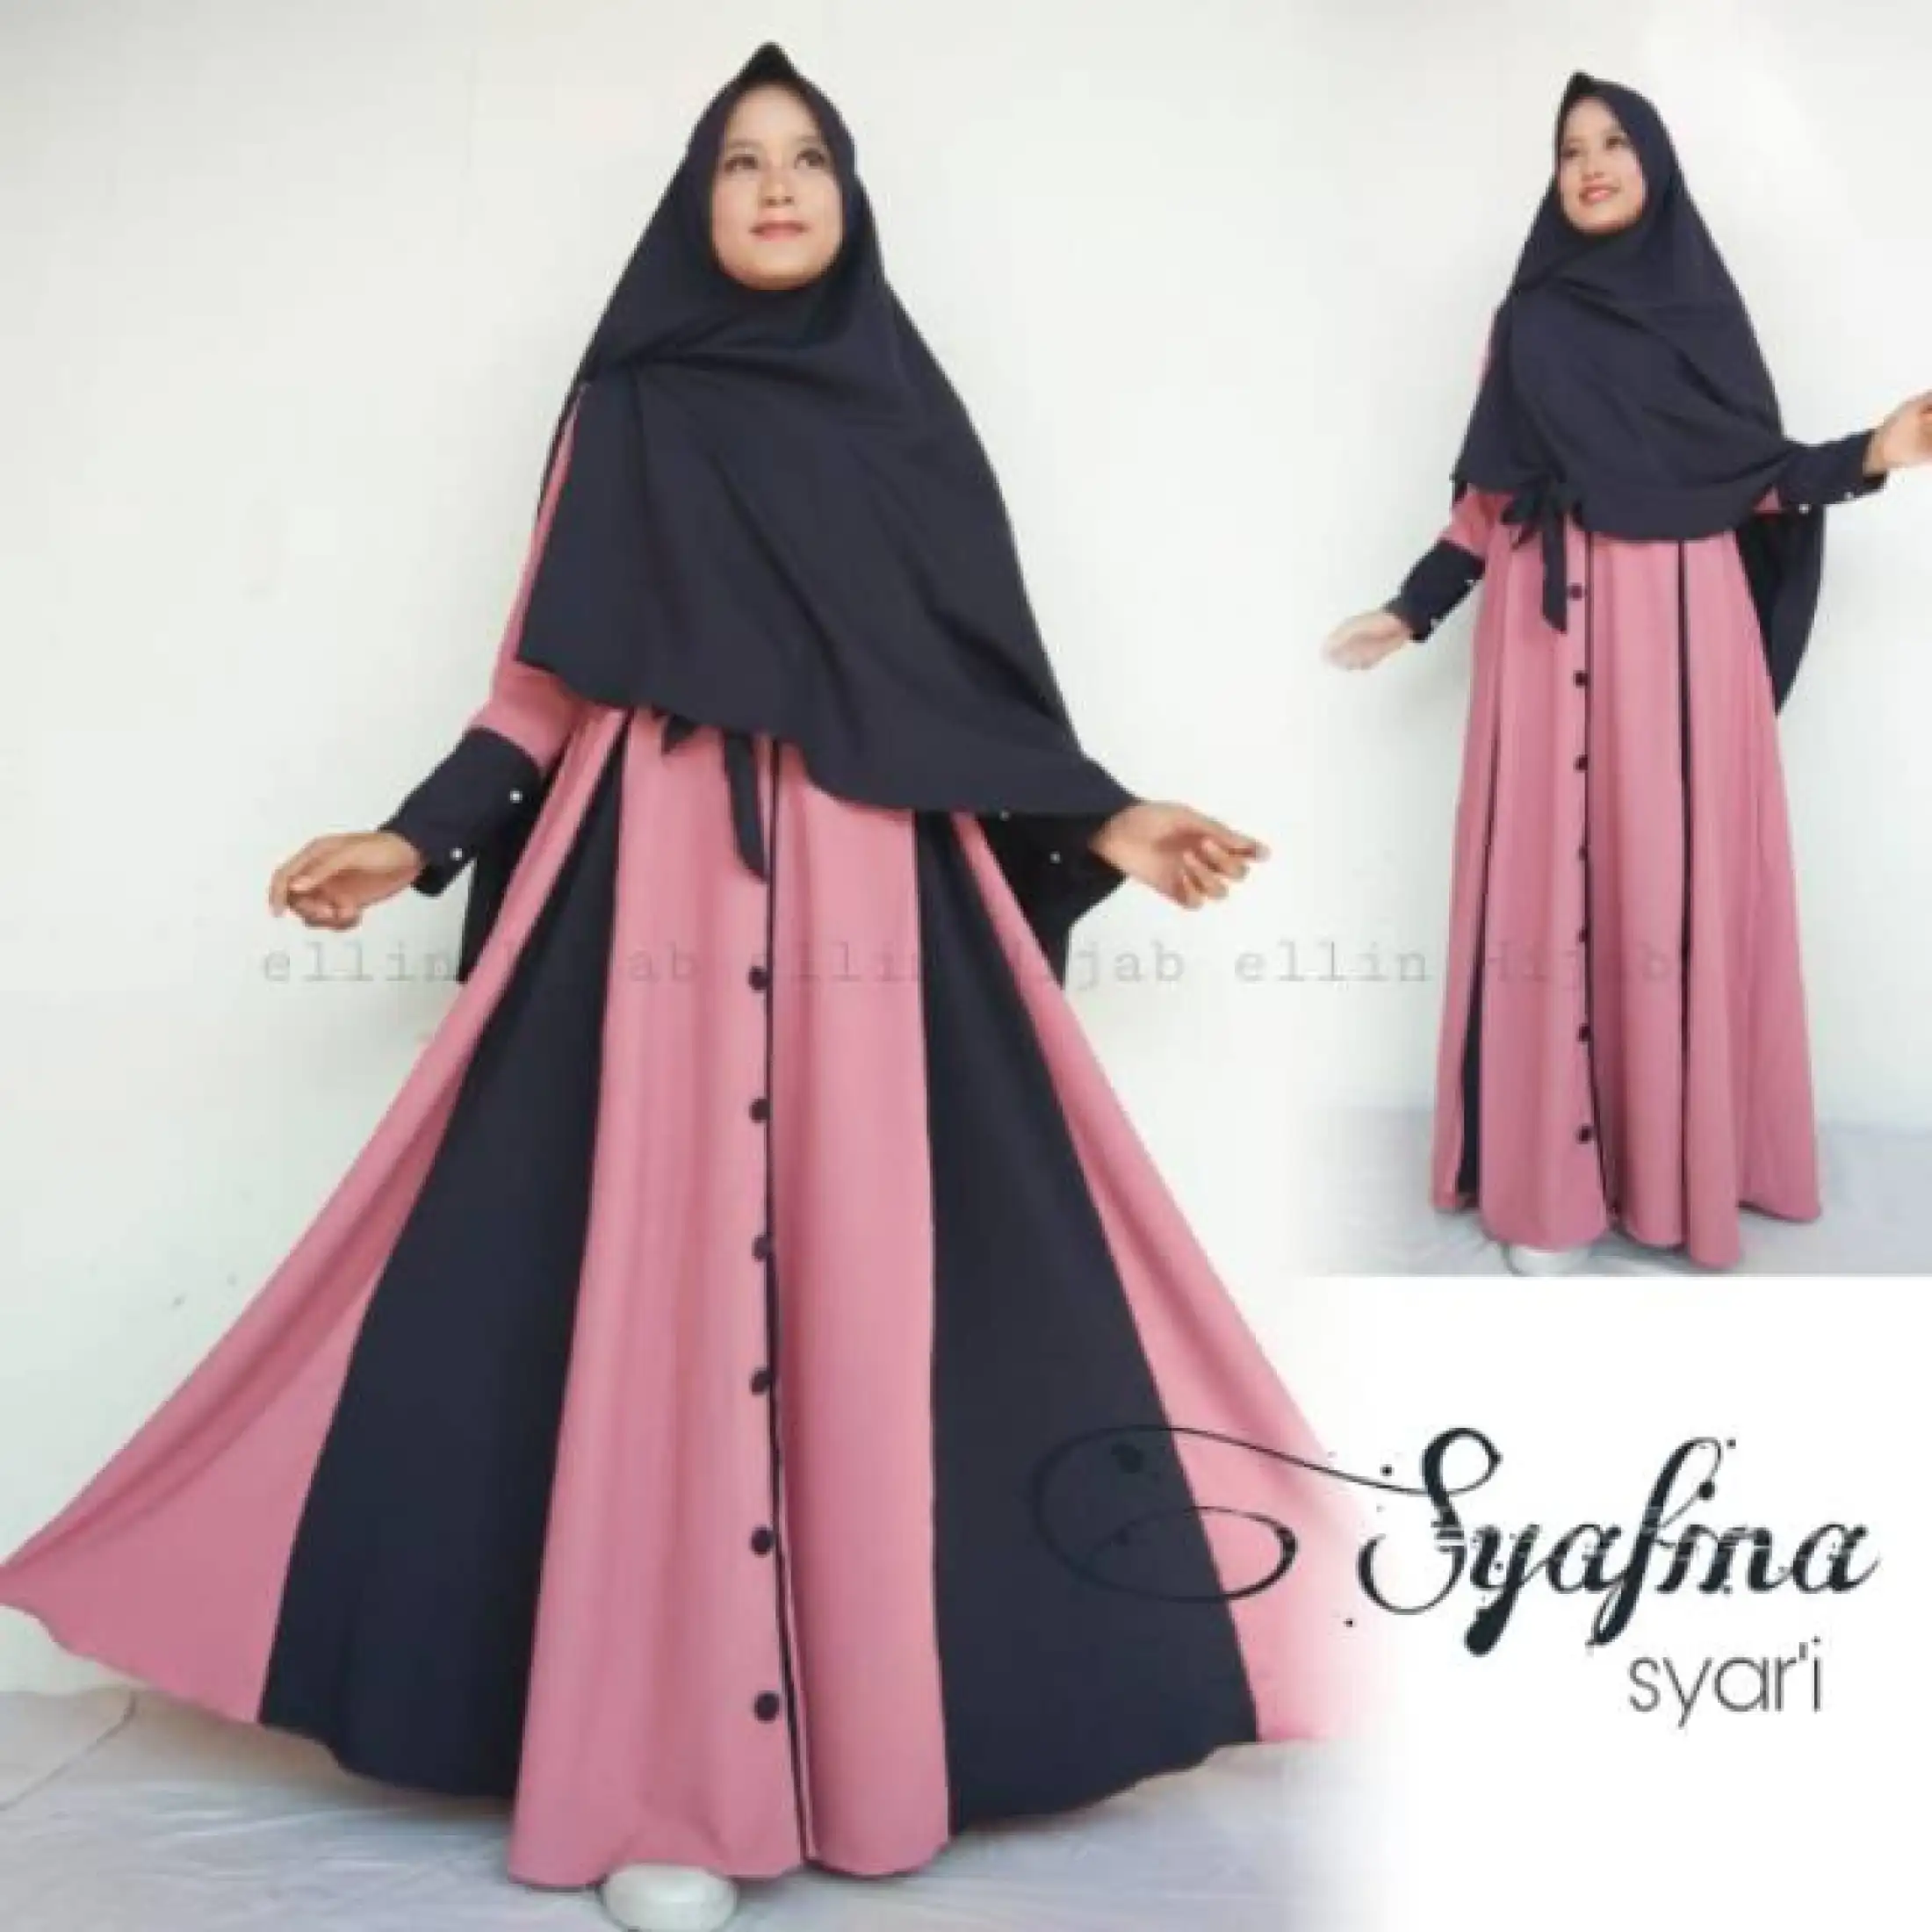 Baju Gamis Syafina Syari Aku Carissa Fashion Dress Muslim Remaja Polos Moscrepe Busui Kekinian Laris Murah Wanita Lazada Indonesia